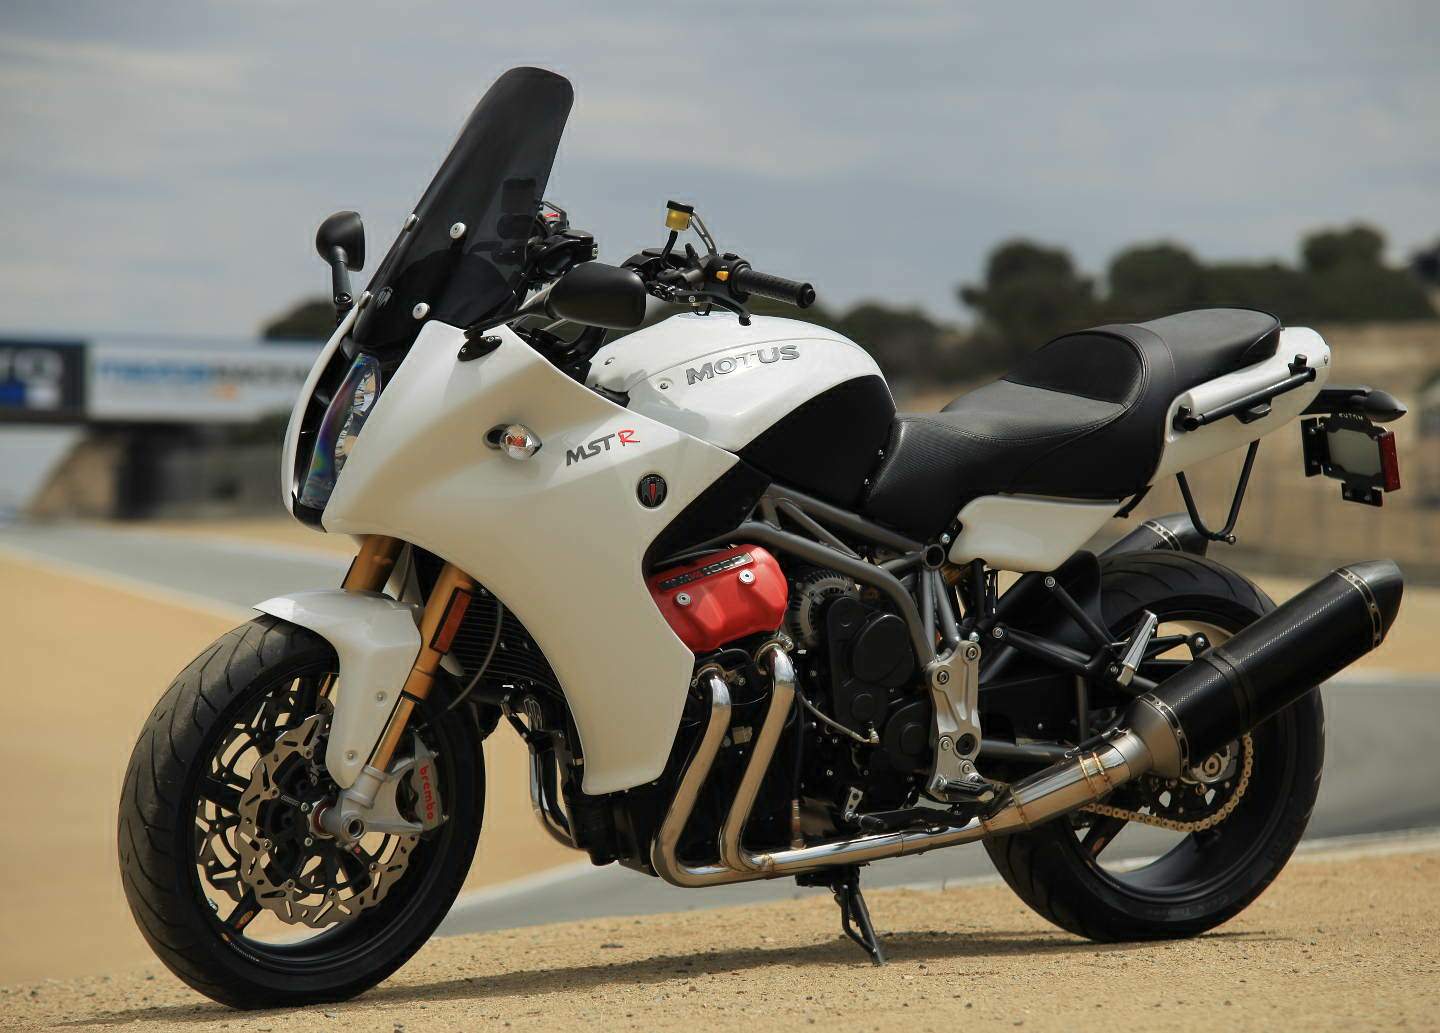 Мотоцикл Motus MSTR 2014